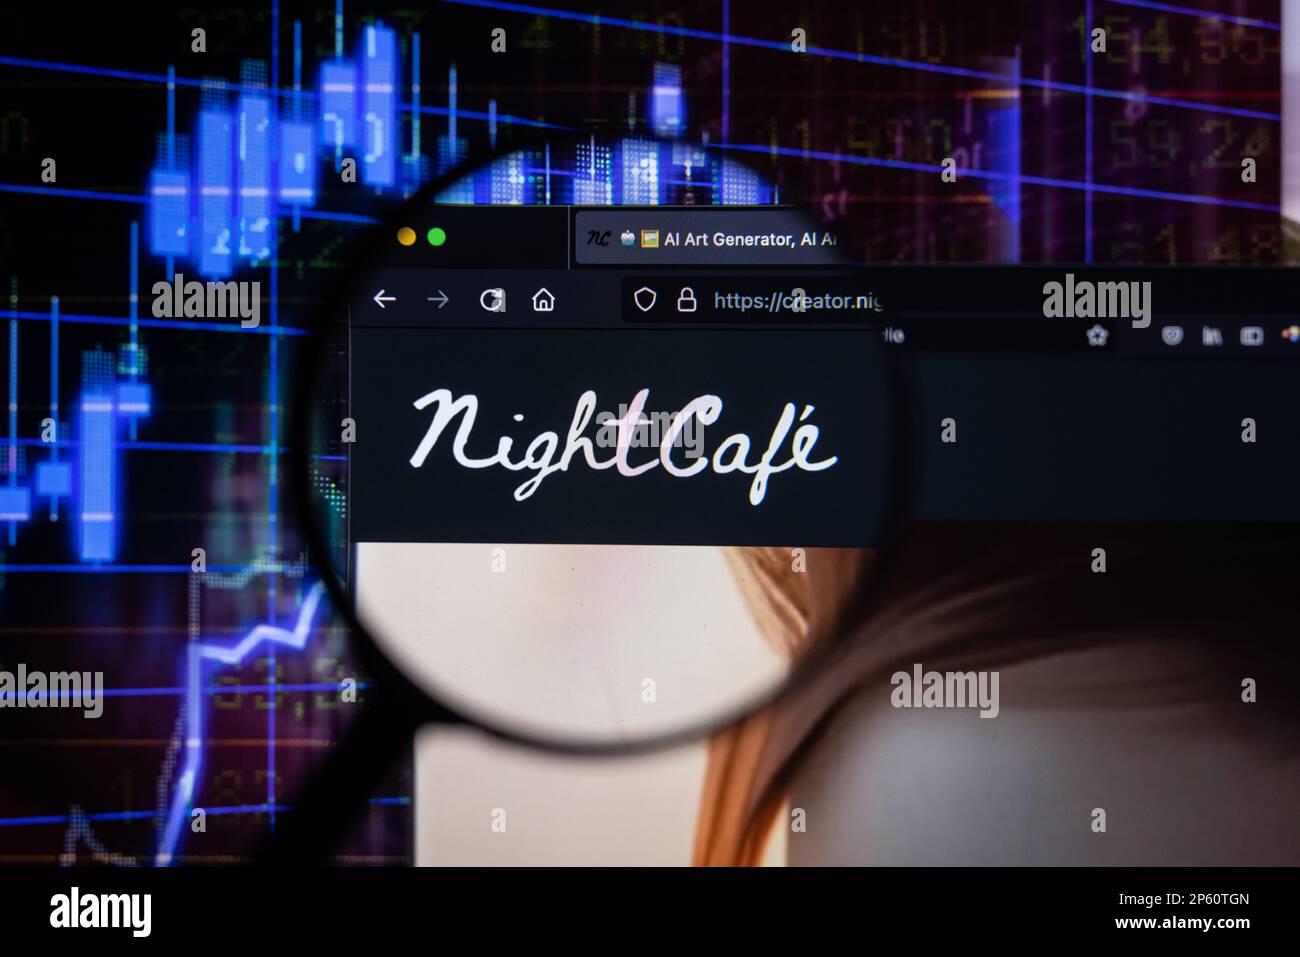 Nightcafe logo de la société sur un site Web avec des développements flous de marché boursier en arrière-plan, vu sur un écran d'ordinateur à travers une loupe Banque D'Images